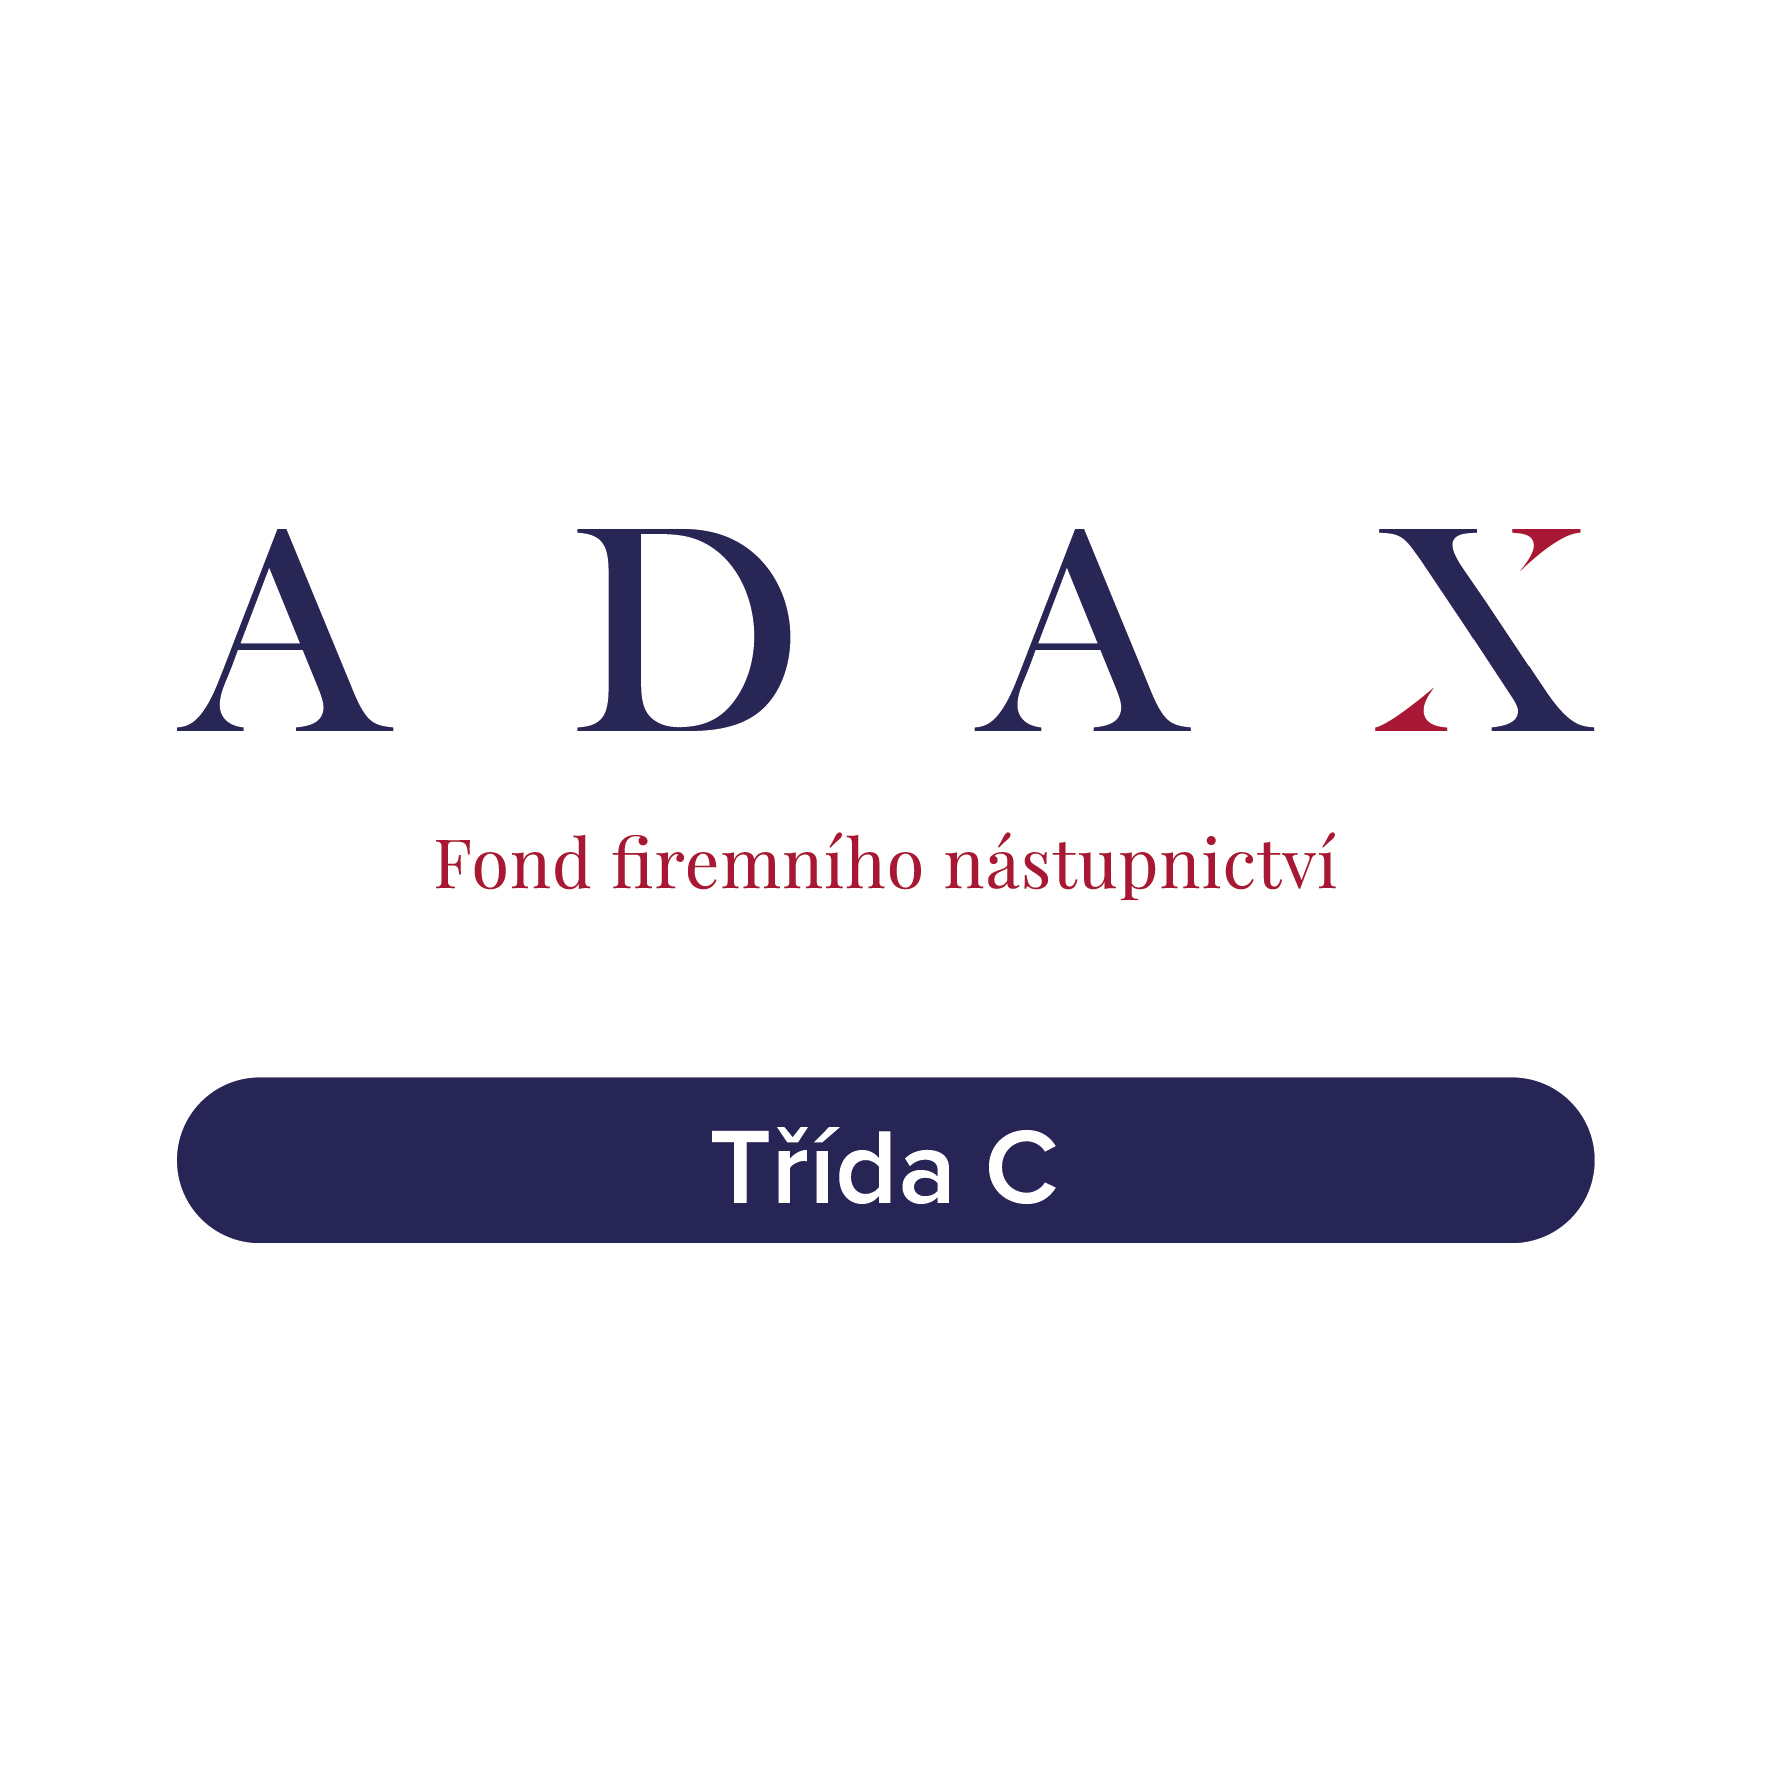 ADAX DAX Fond firemního nástupnictví, podfond 1 - třída C  